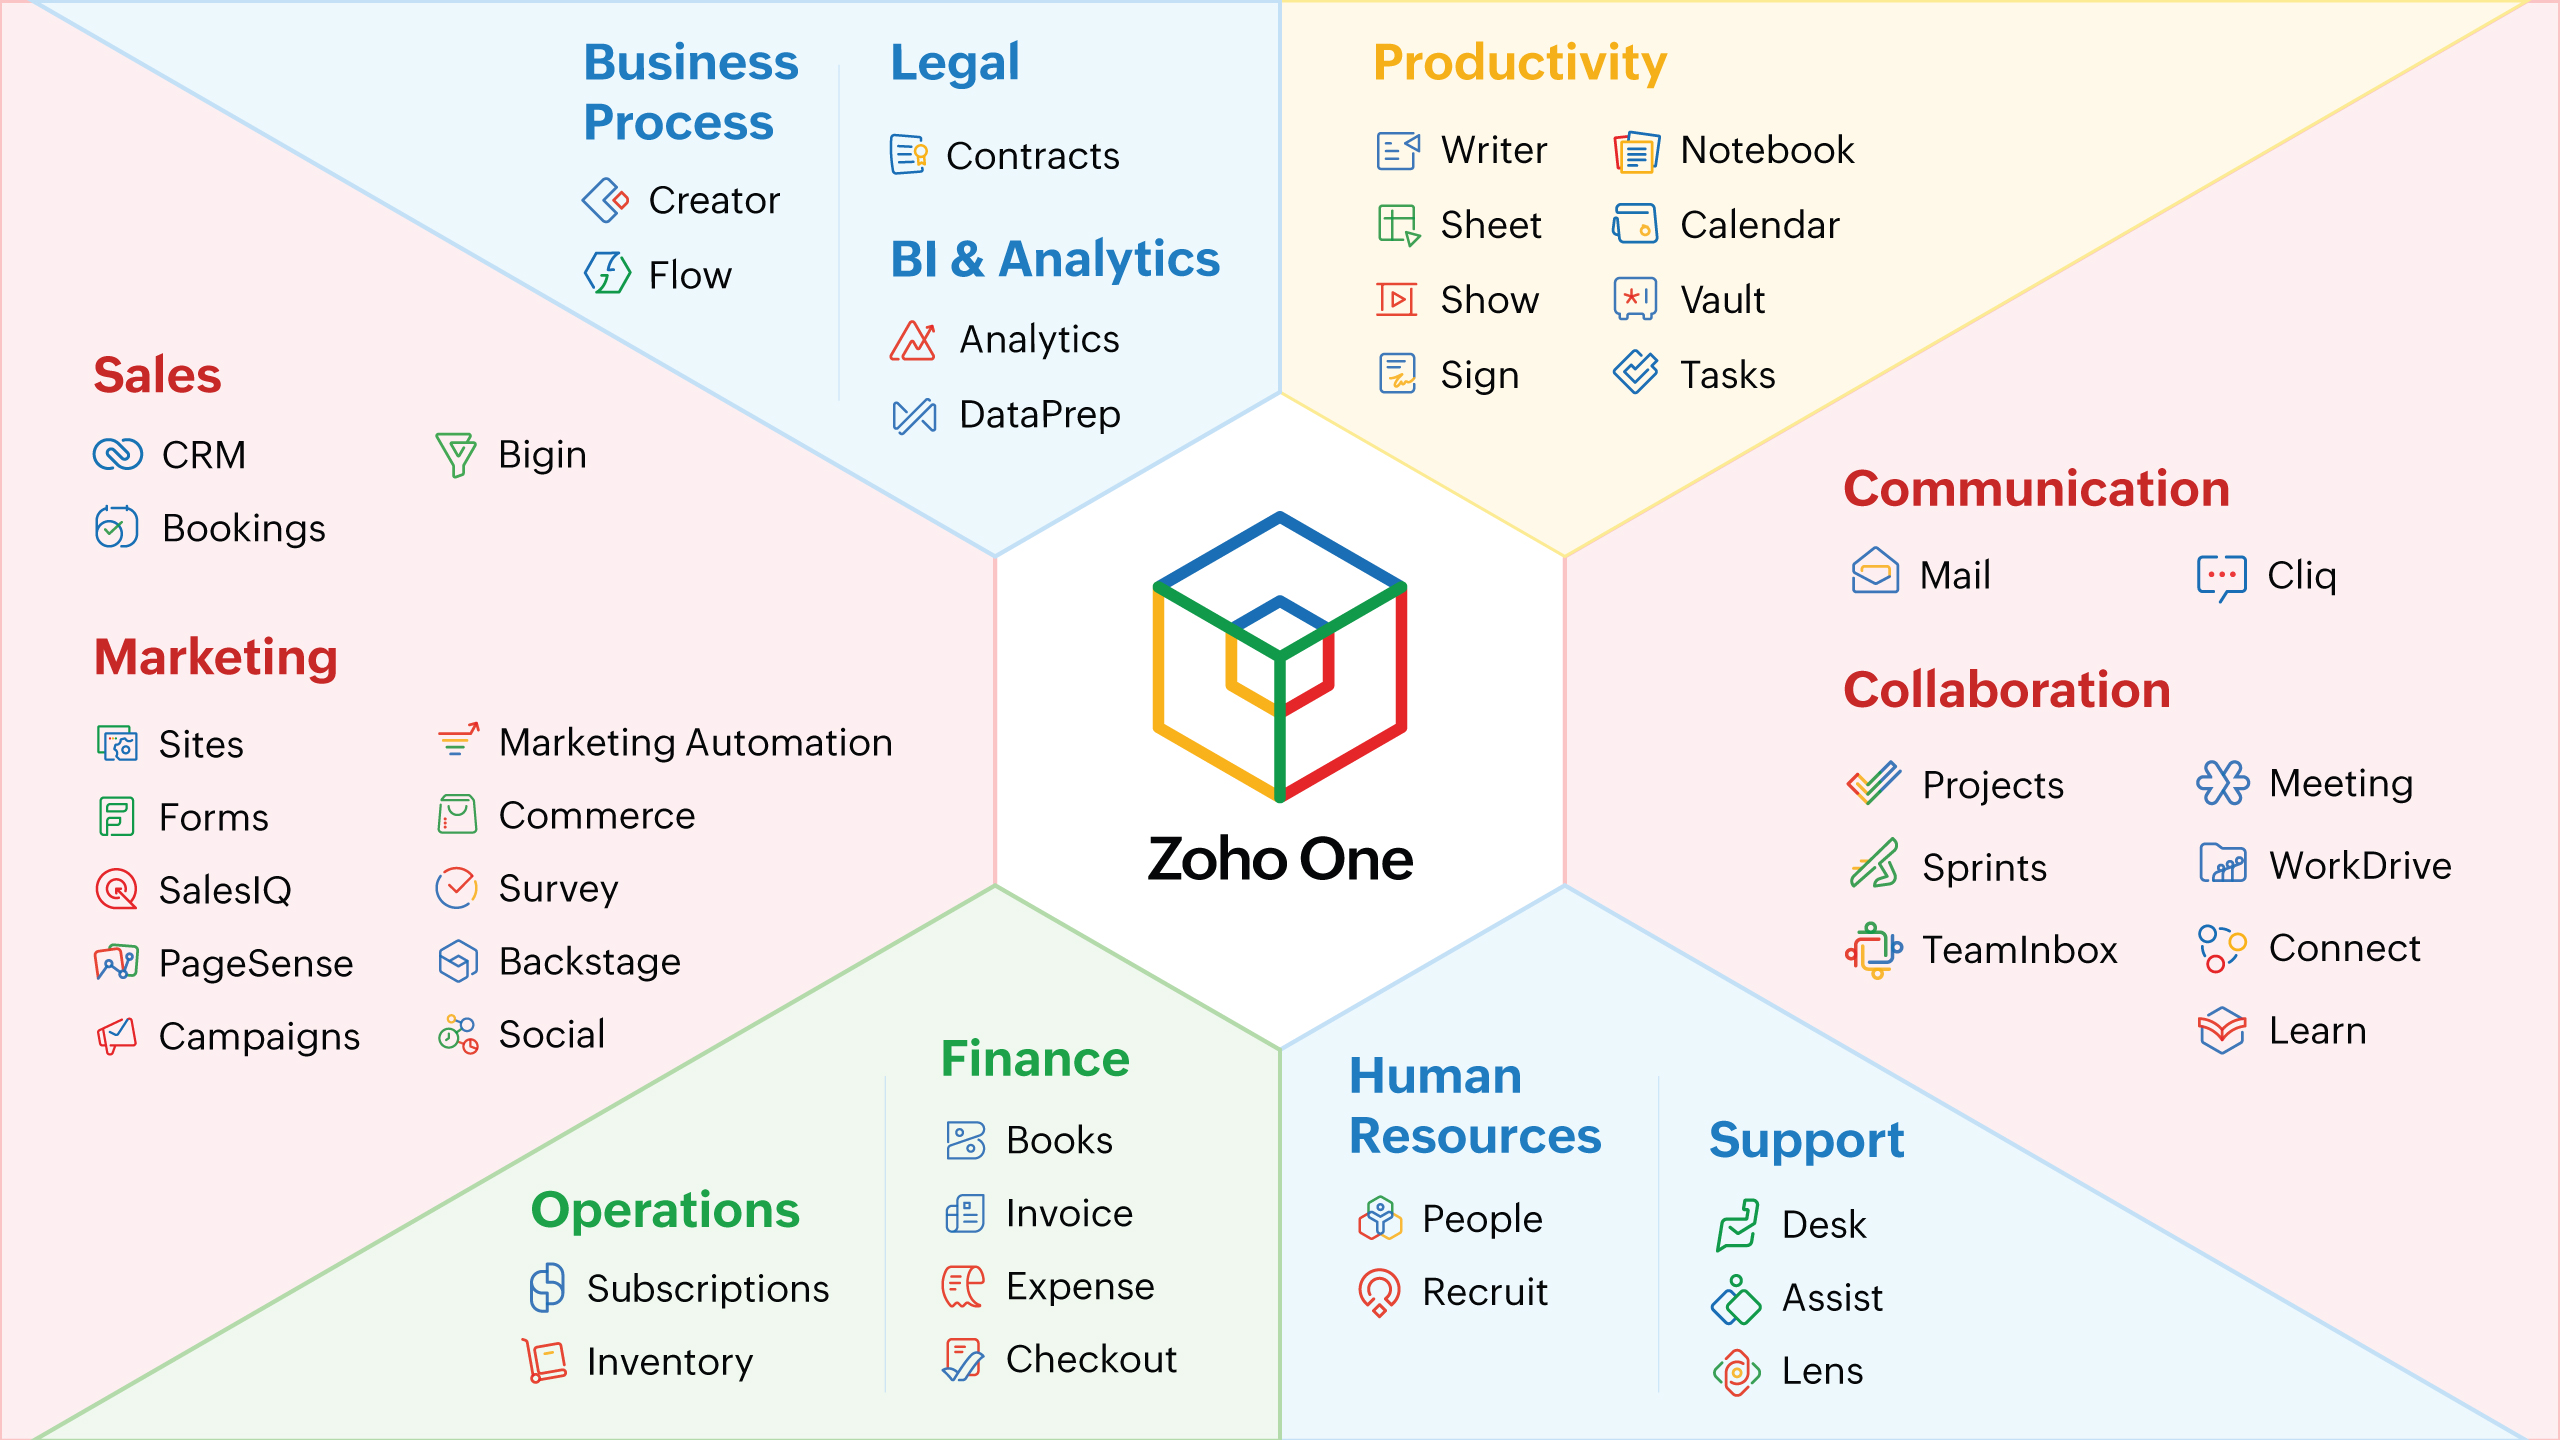 บริษัท Zoho ฉลอง Zoho One ครบรอบห้าปี ยอดผู้ใช้งานพุ่งสูงเป็นประวัติการณ์ พร้อมขับเคลื่อนธุรกิจในตลาด Upmarket